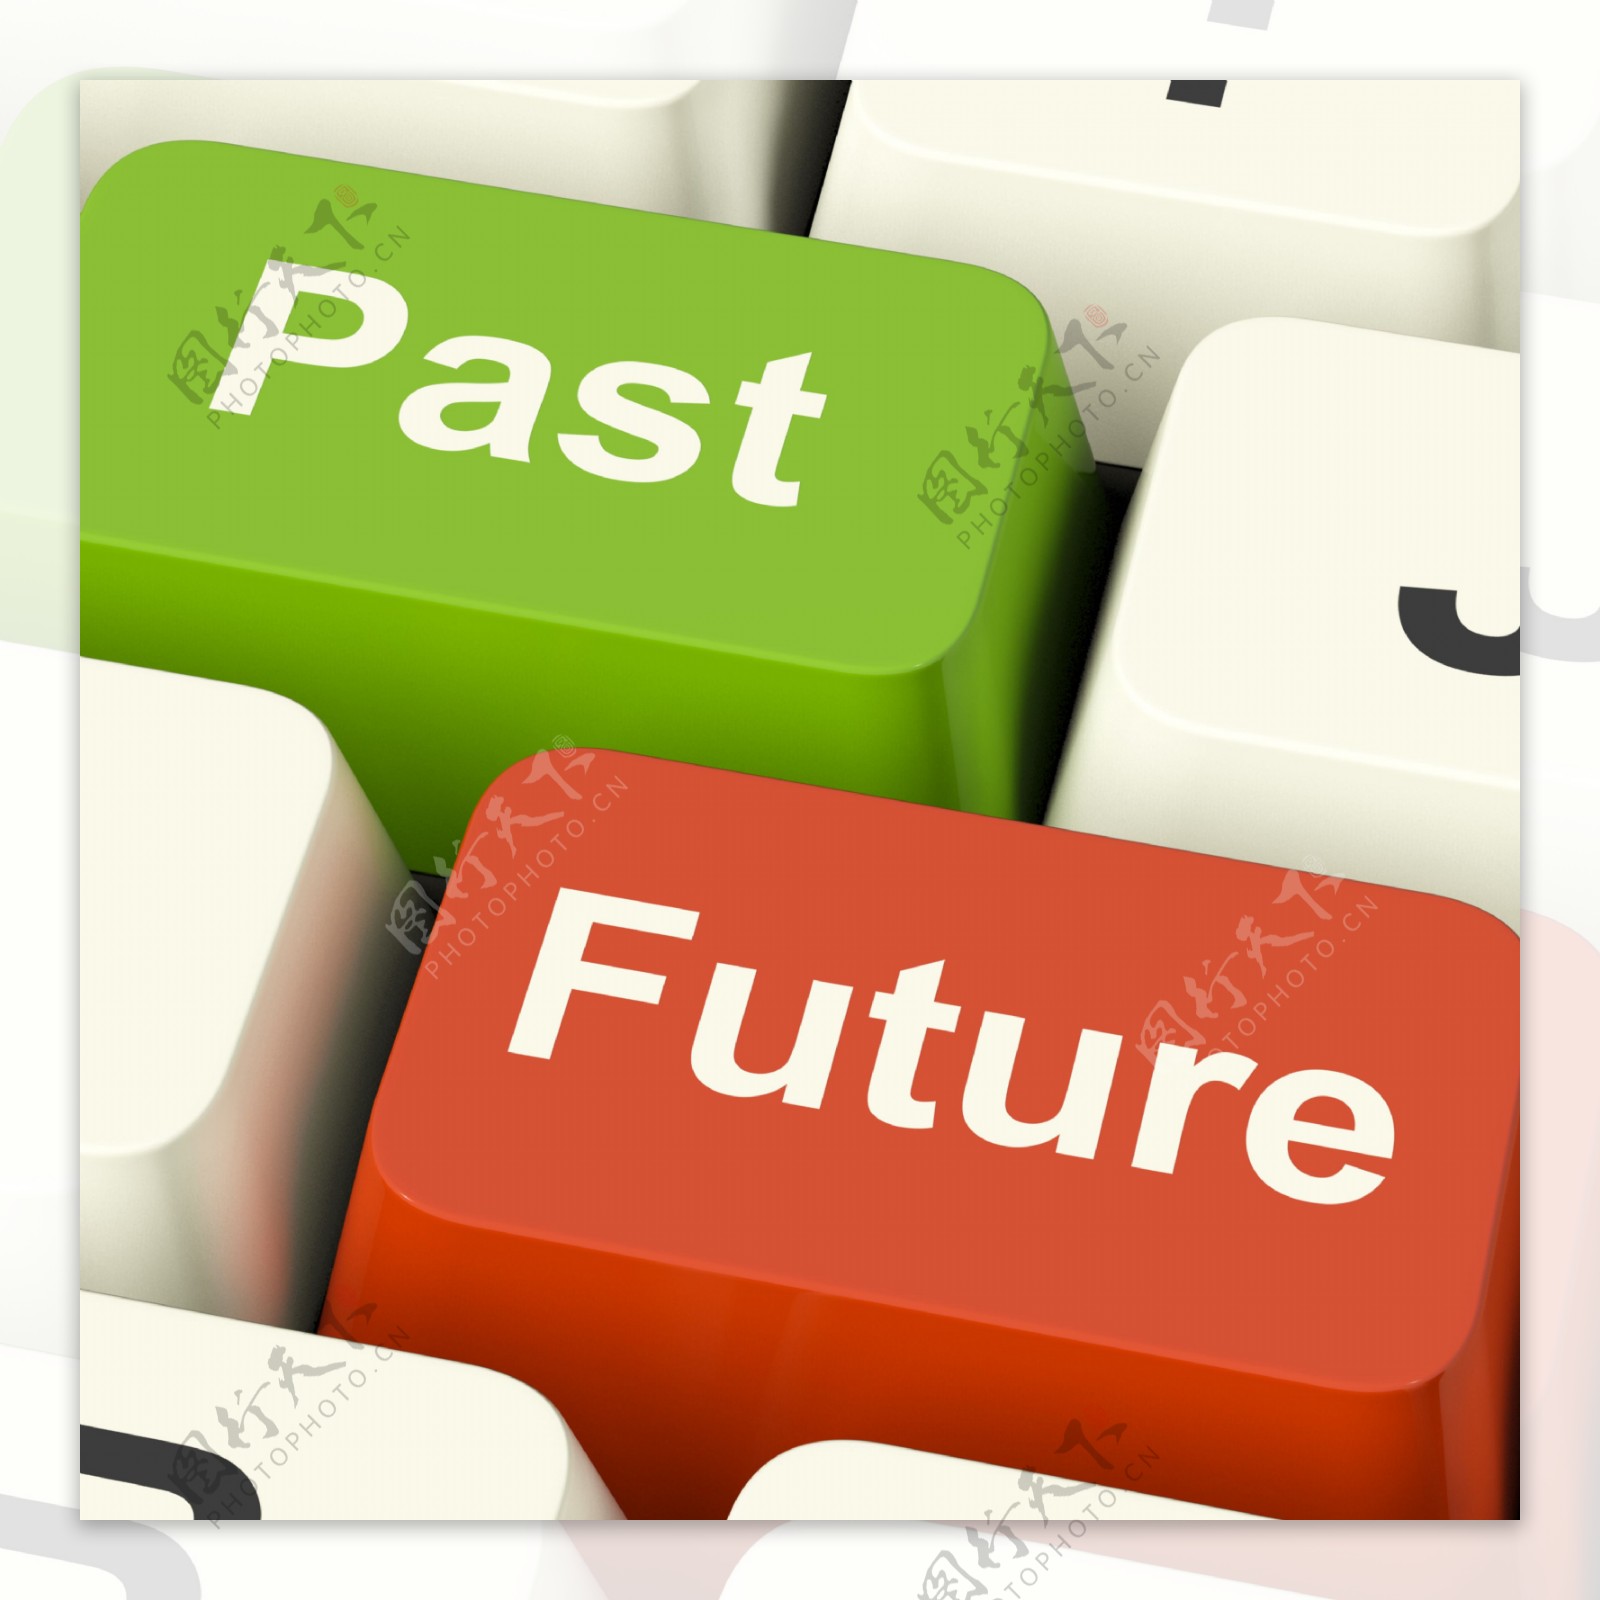 过去和未来的键显示演化老化或进展